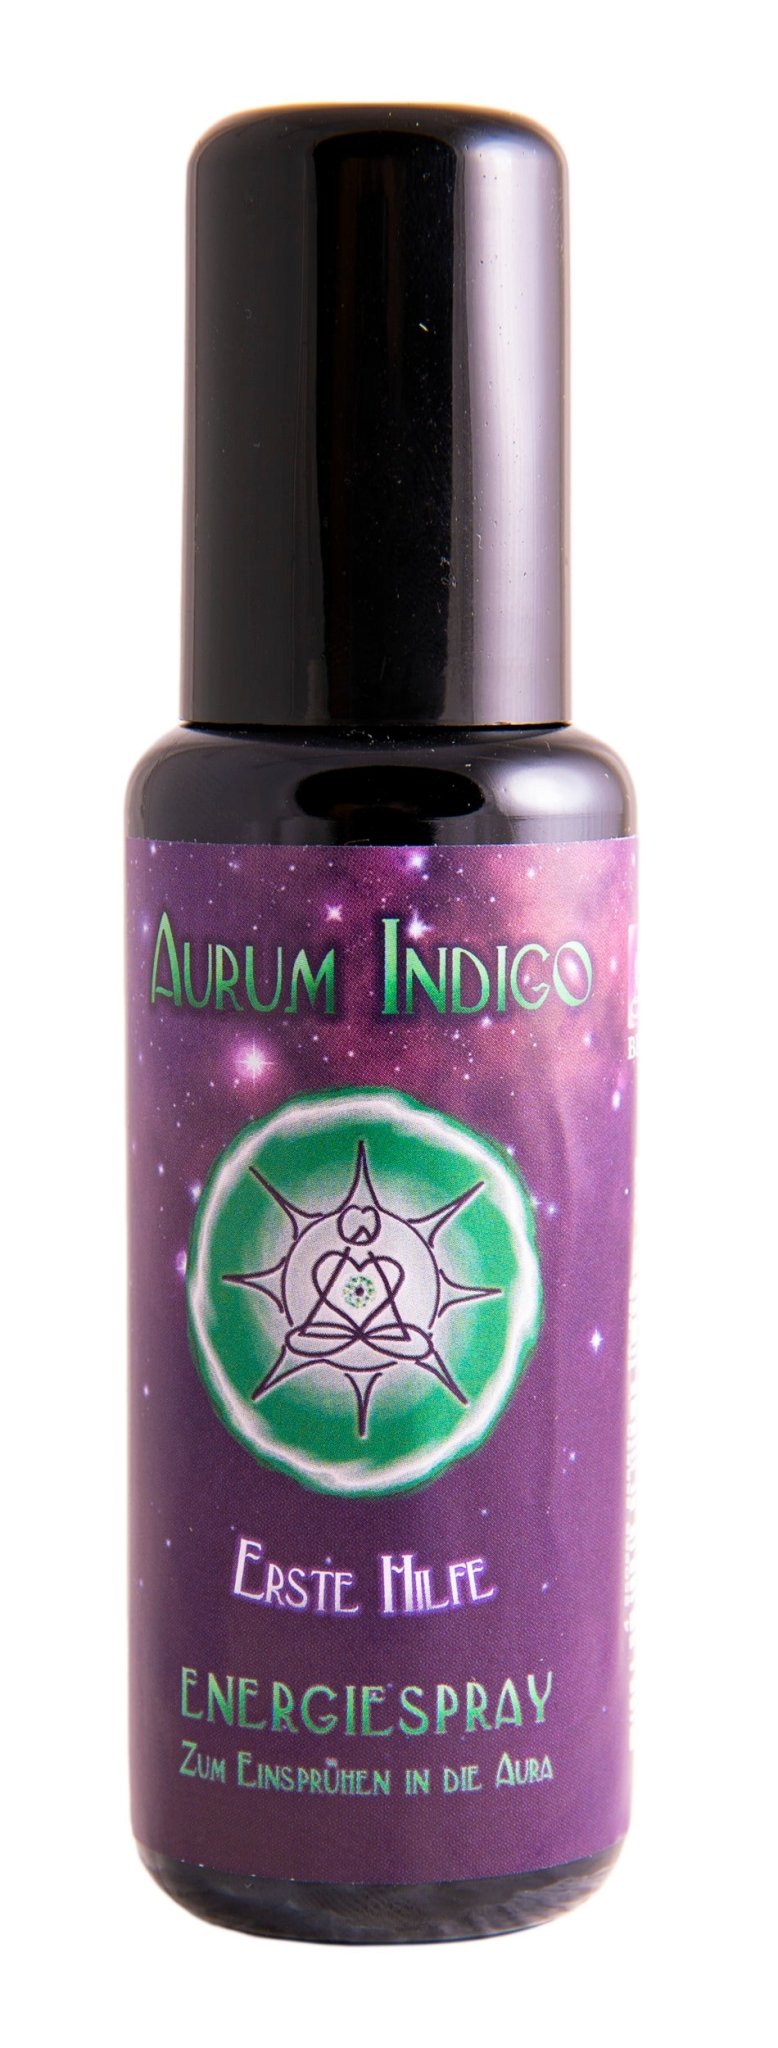 Erste Hilfe Aurum Indigo Energiespray 50 ml - Das Raeucherwerk